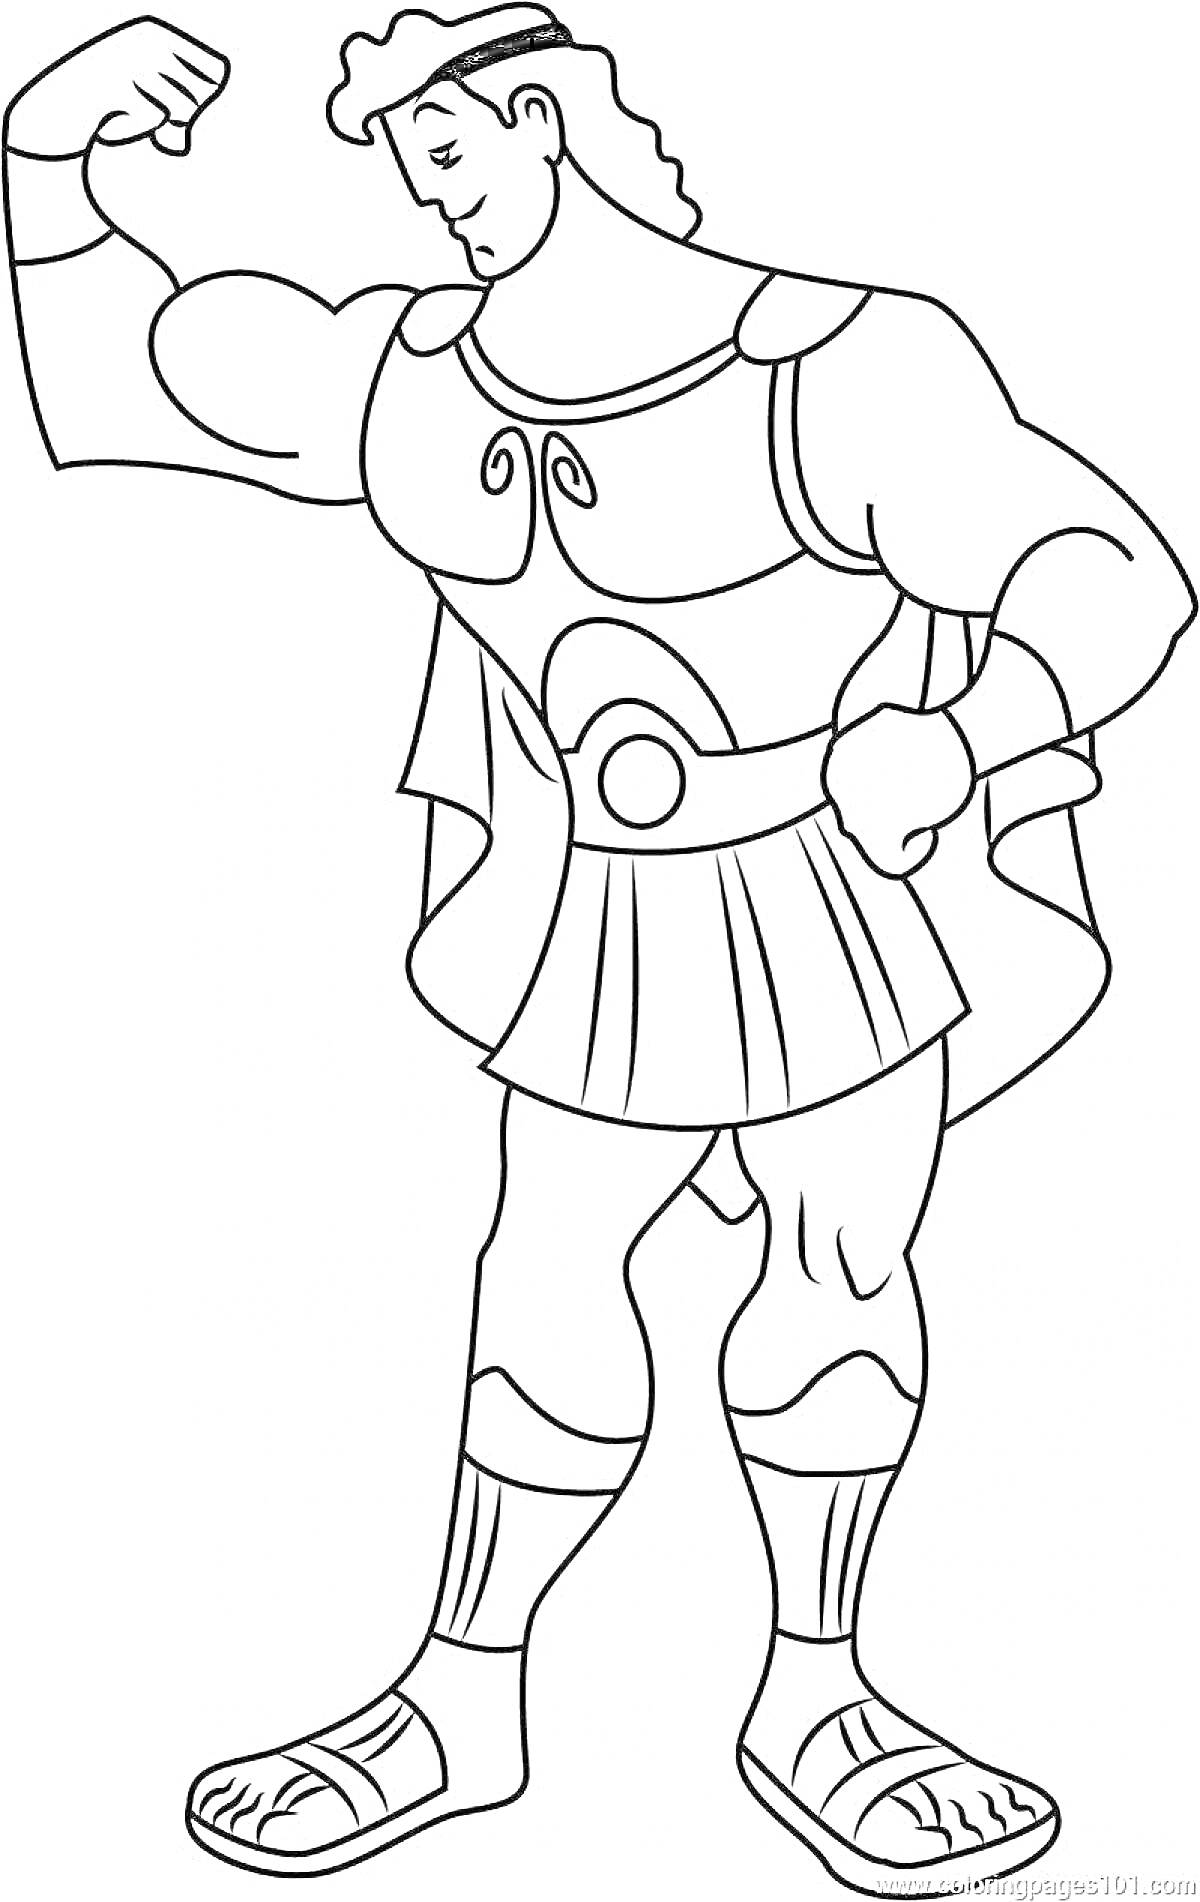 Раскраска с изображением Геракла, демонстрирующего мускулы, одетого в античные доспехи и сандалии